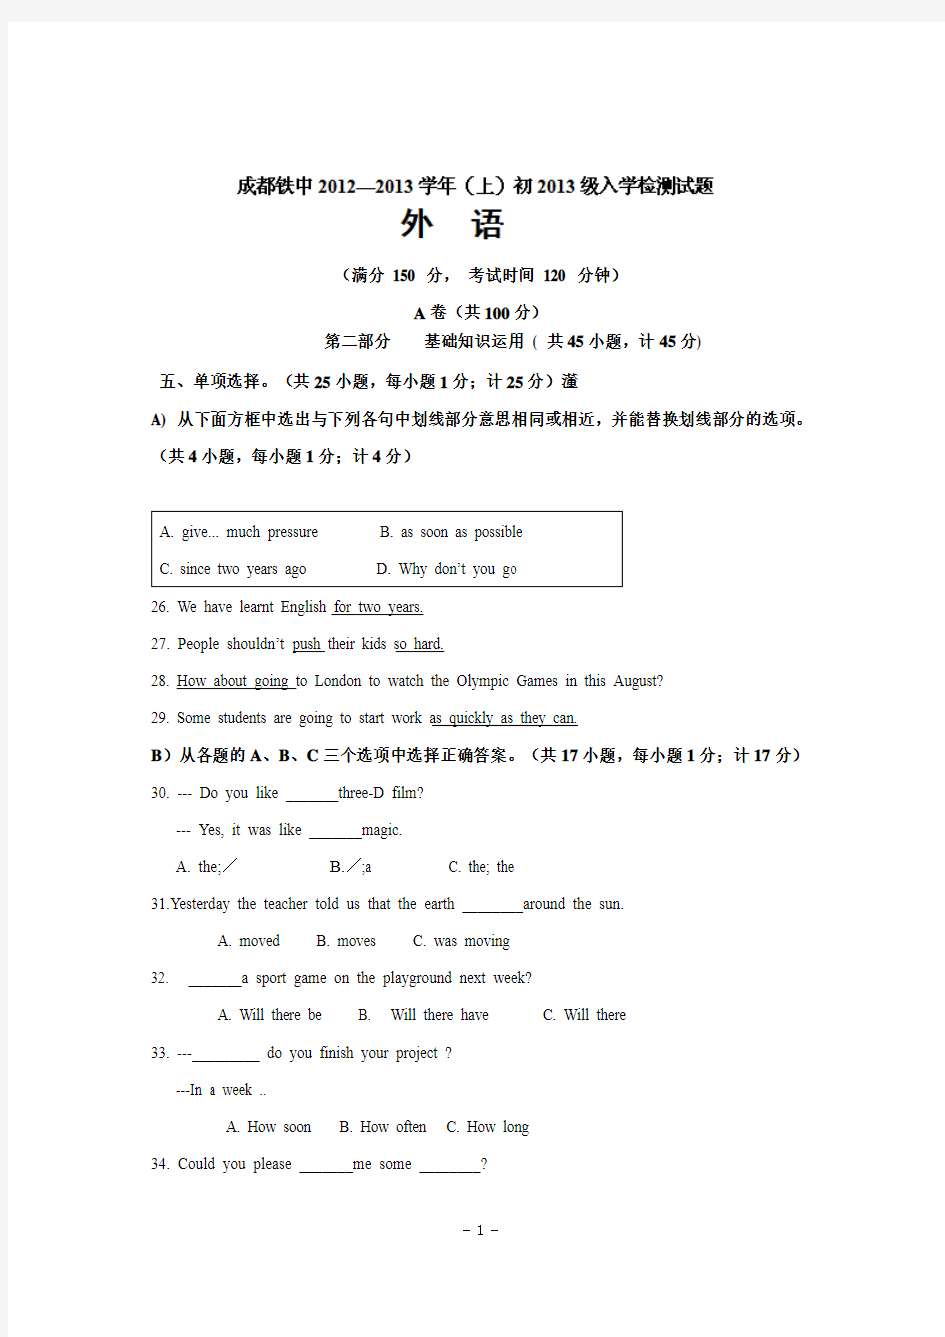 四川省成都市铁路中学2013届九年级上学期入学考试英语试题